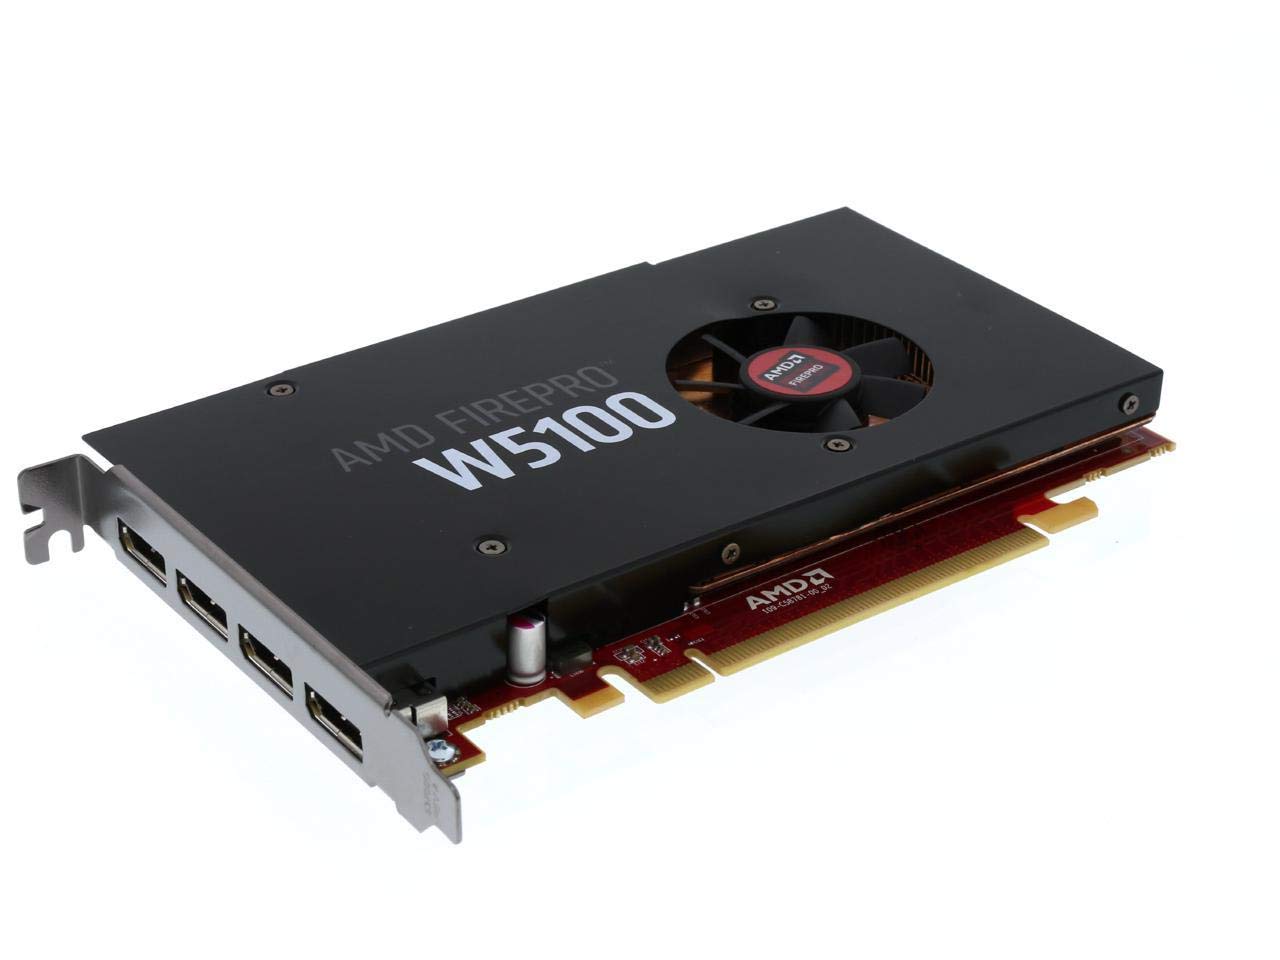 AMD FirePro W5100 4GB GDDR5 PCIe Gen 3.0 Professional Graphics Card, 1.43TFLOPS, 768 Cores 4x DisplayPorts 1.2 OEM - Plain Box (Renewed)